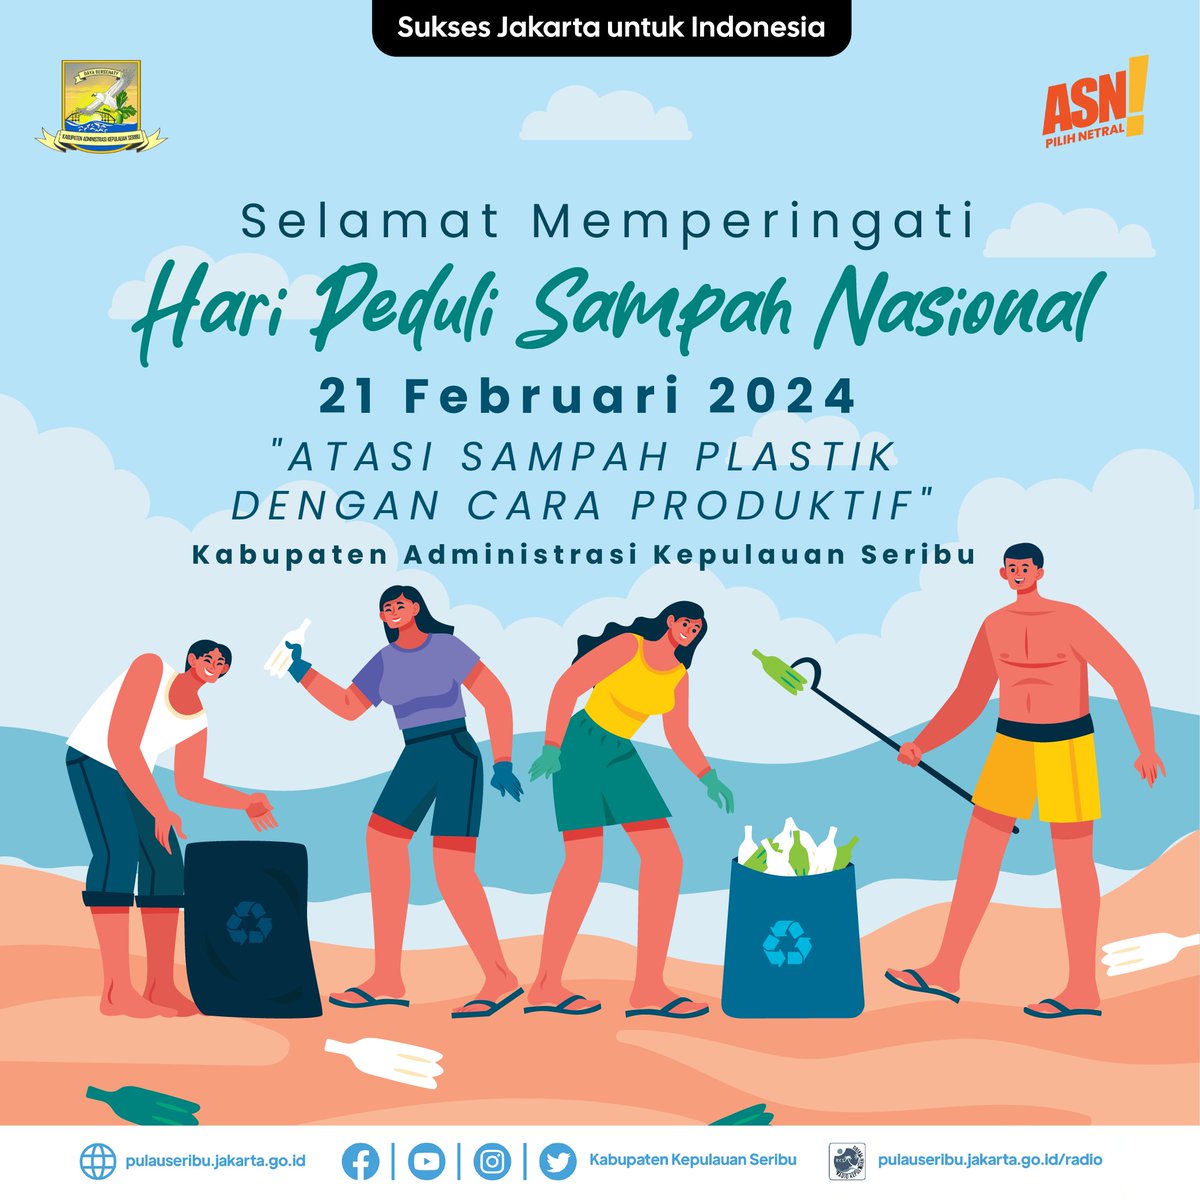 Selamat Memperingati Hari Peduli Sampah Nasional
21 Februari 2024
'Atasi Sampah Plastik dengan Cara Produktif'

#haripedulisampahnasional #hpsn #hpsn2024 #kepulauanseribu #pulauseribu #dkijakarta #SuksesJakartauntukIndonesia